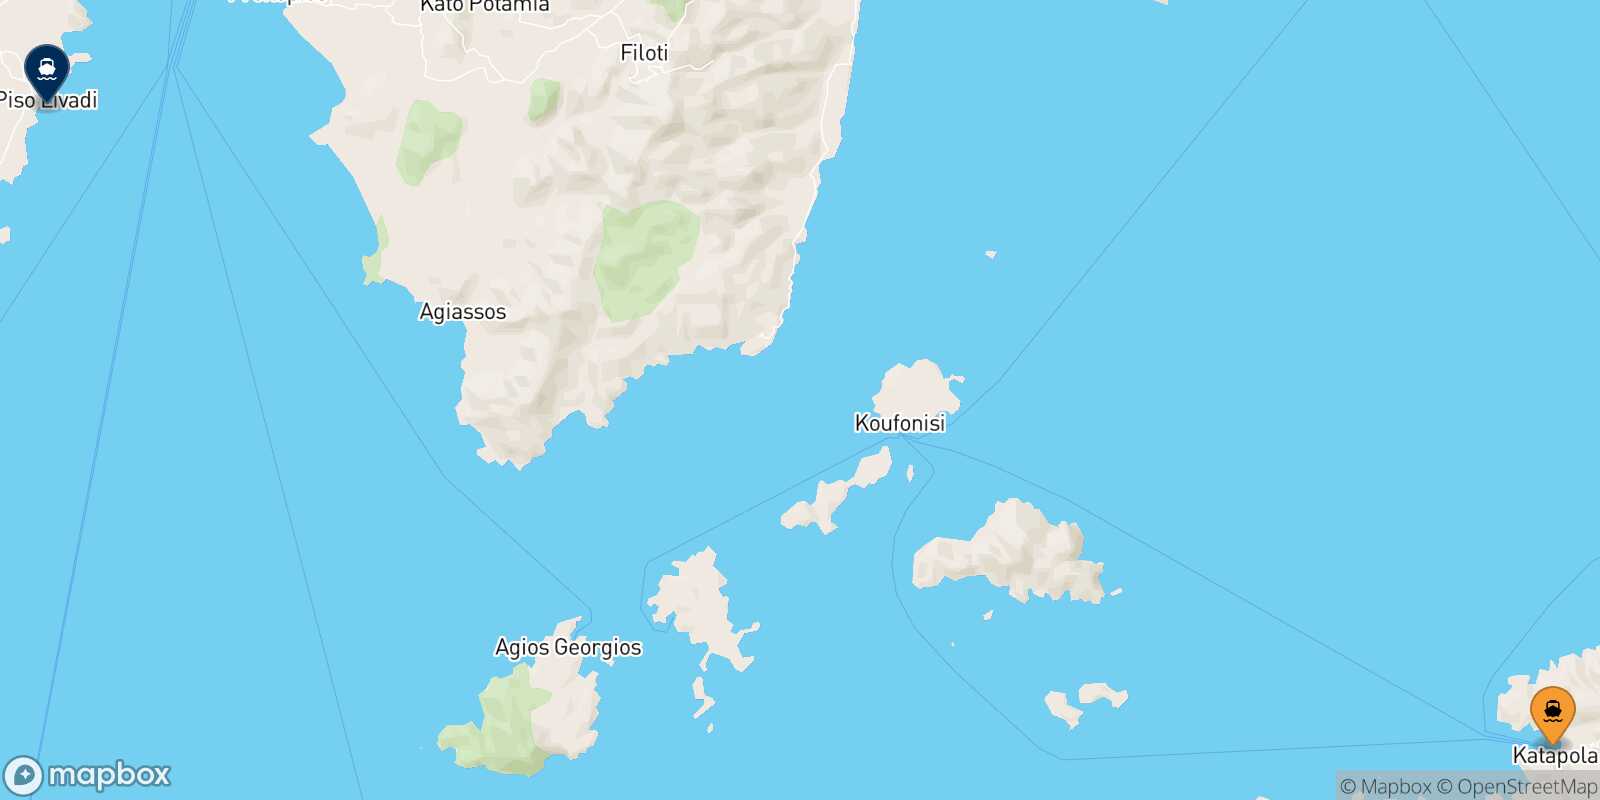 Mapa de la ruta Katapola (Amorgos) Piso Livadi (Paros)